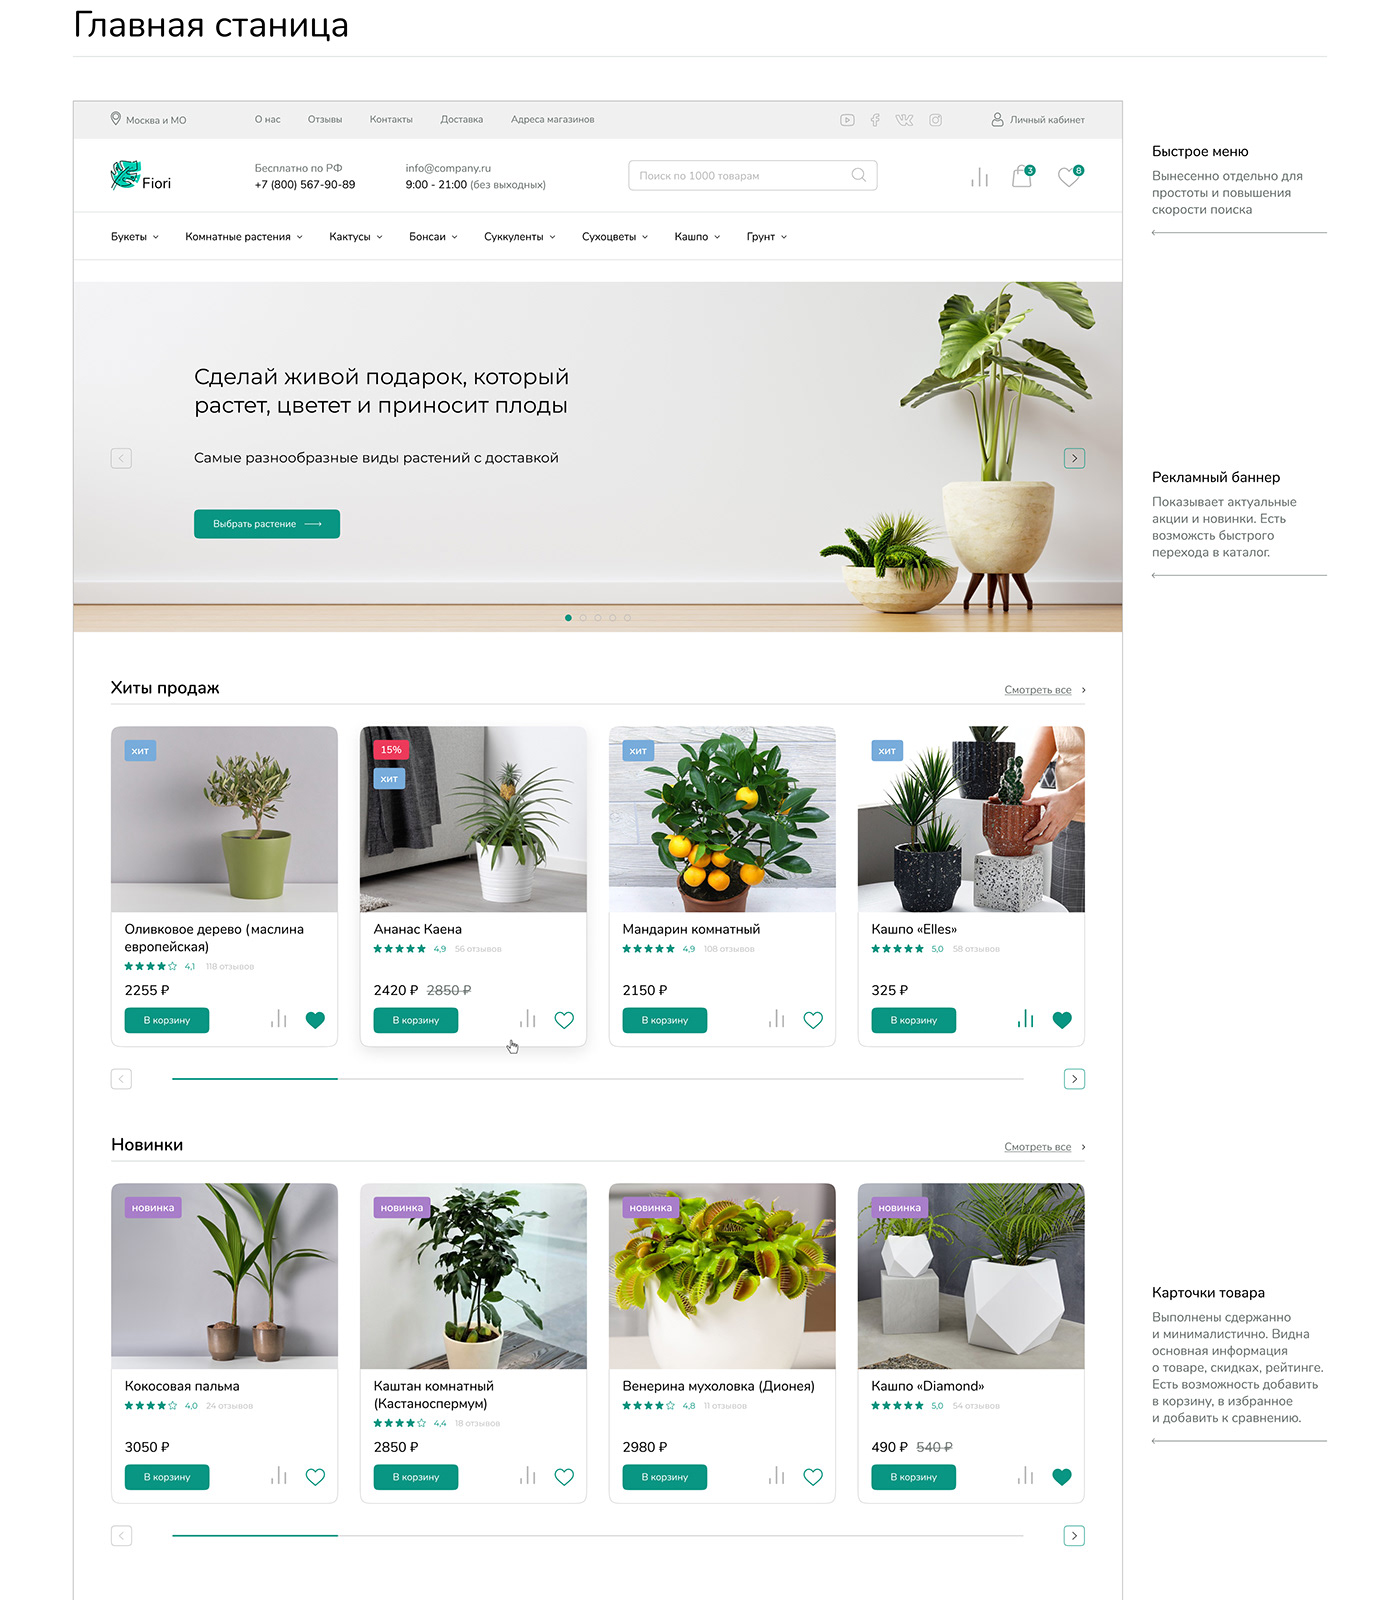 Adaptive Flowers online store store адаптив интернет-магазин магазин страницы цветы